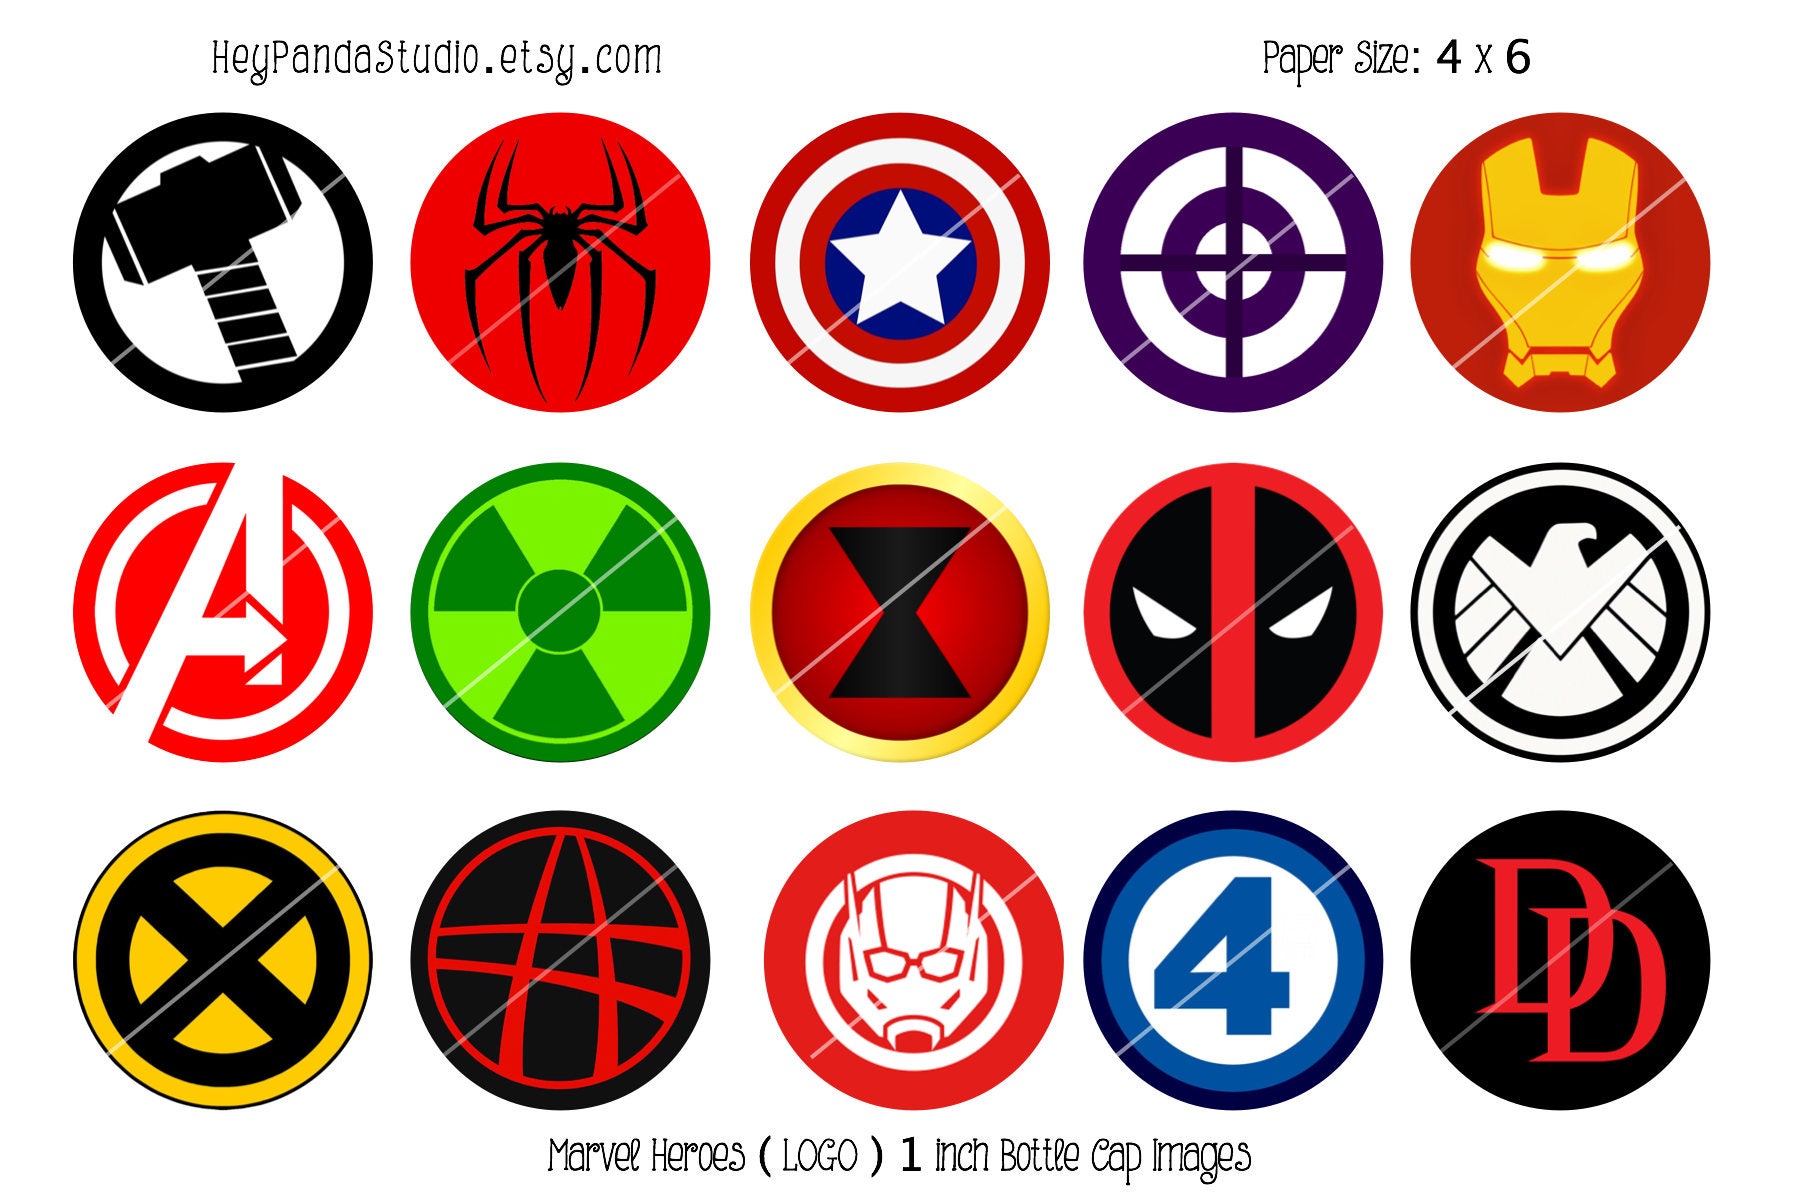 Marvel Heroes Symbol Logo Printable Bottle Cap Images 1 Inch.